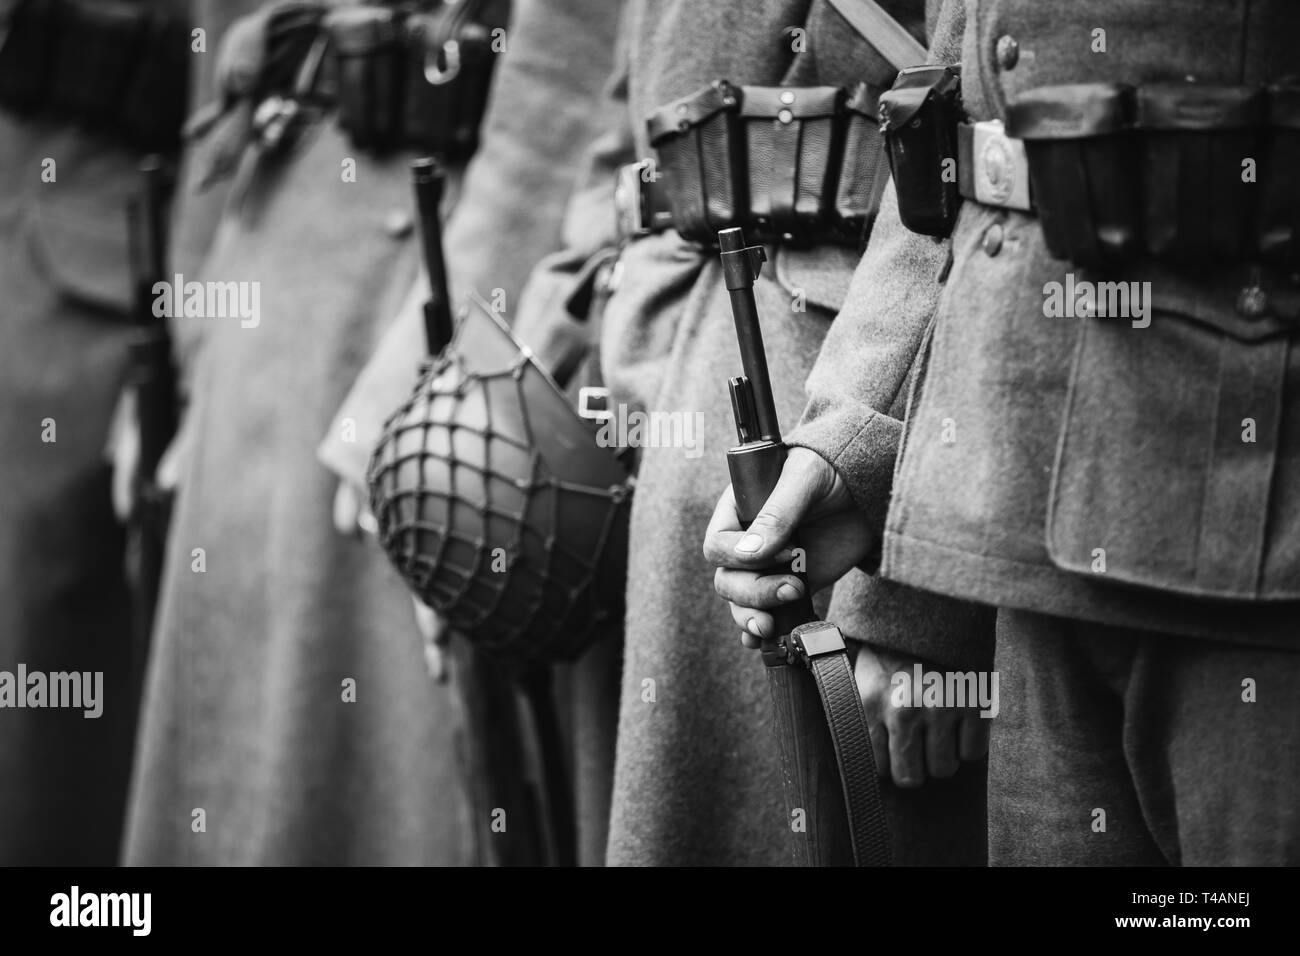 De reconstitution historique habillé comme la Seconde Guerre mondiale, des soldats de la Wehrmacht allemande Article avec armes carabine dans les mains. Photo en noir et blanc. Soldats H Banque D'Images